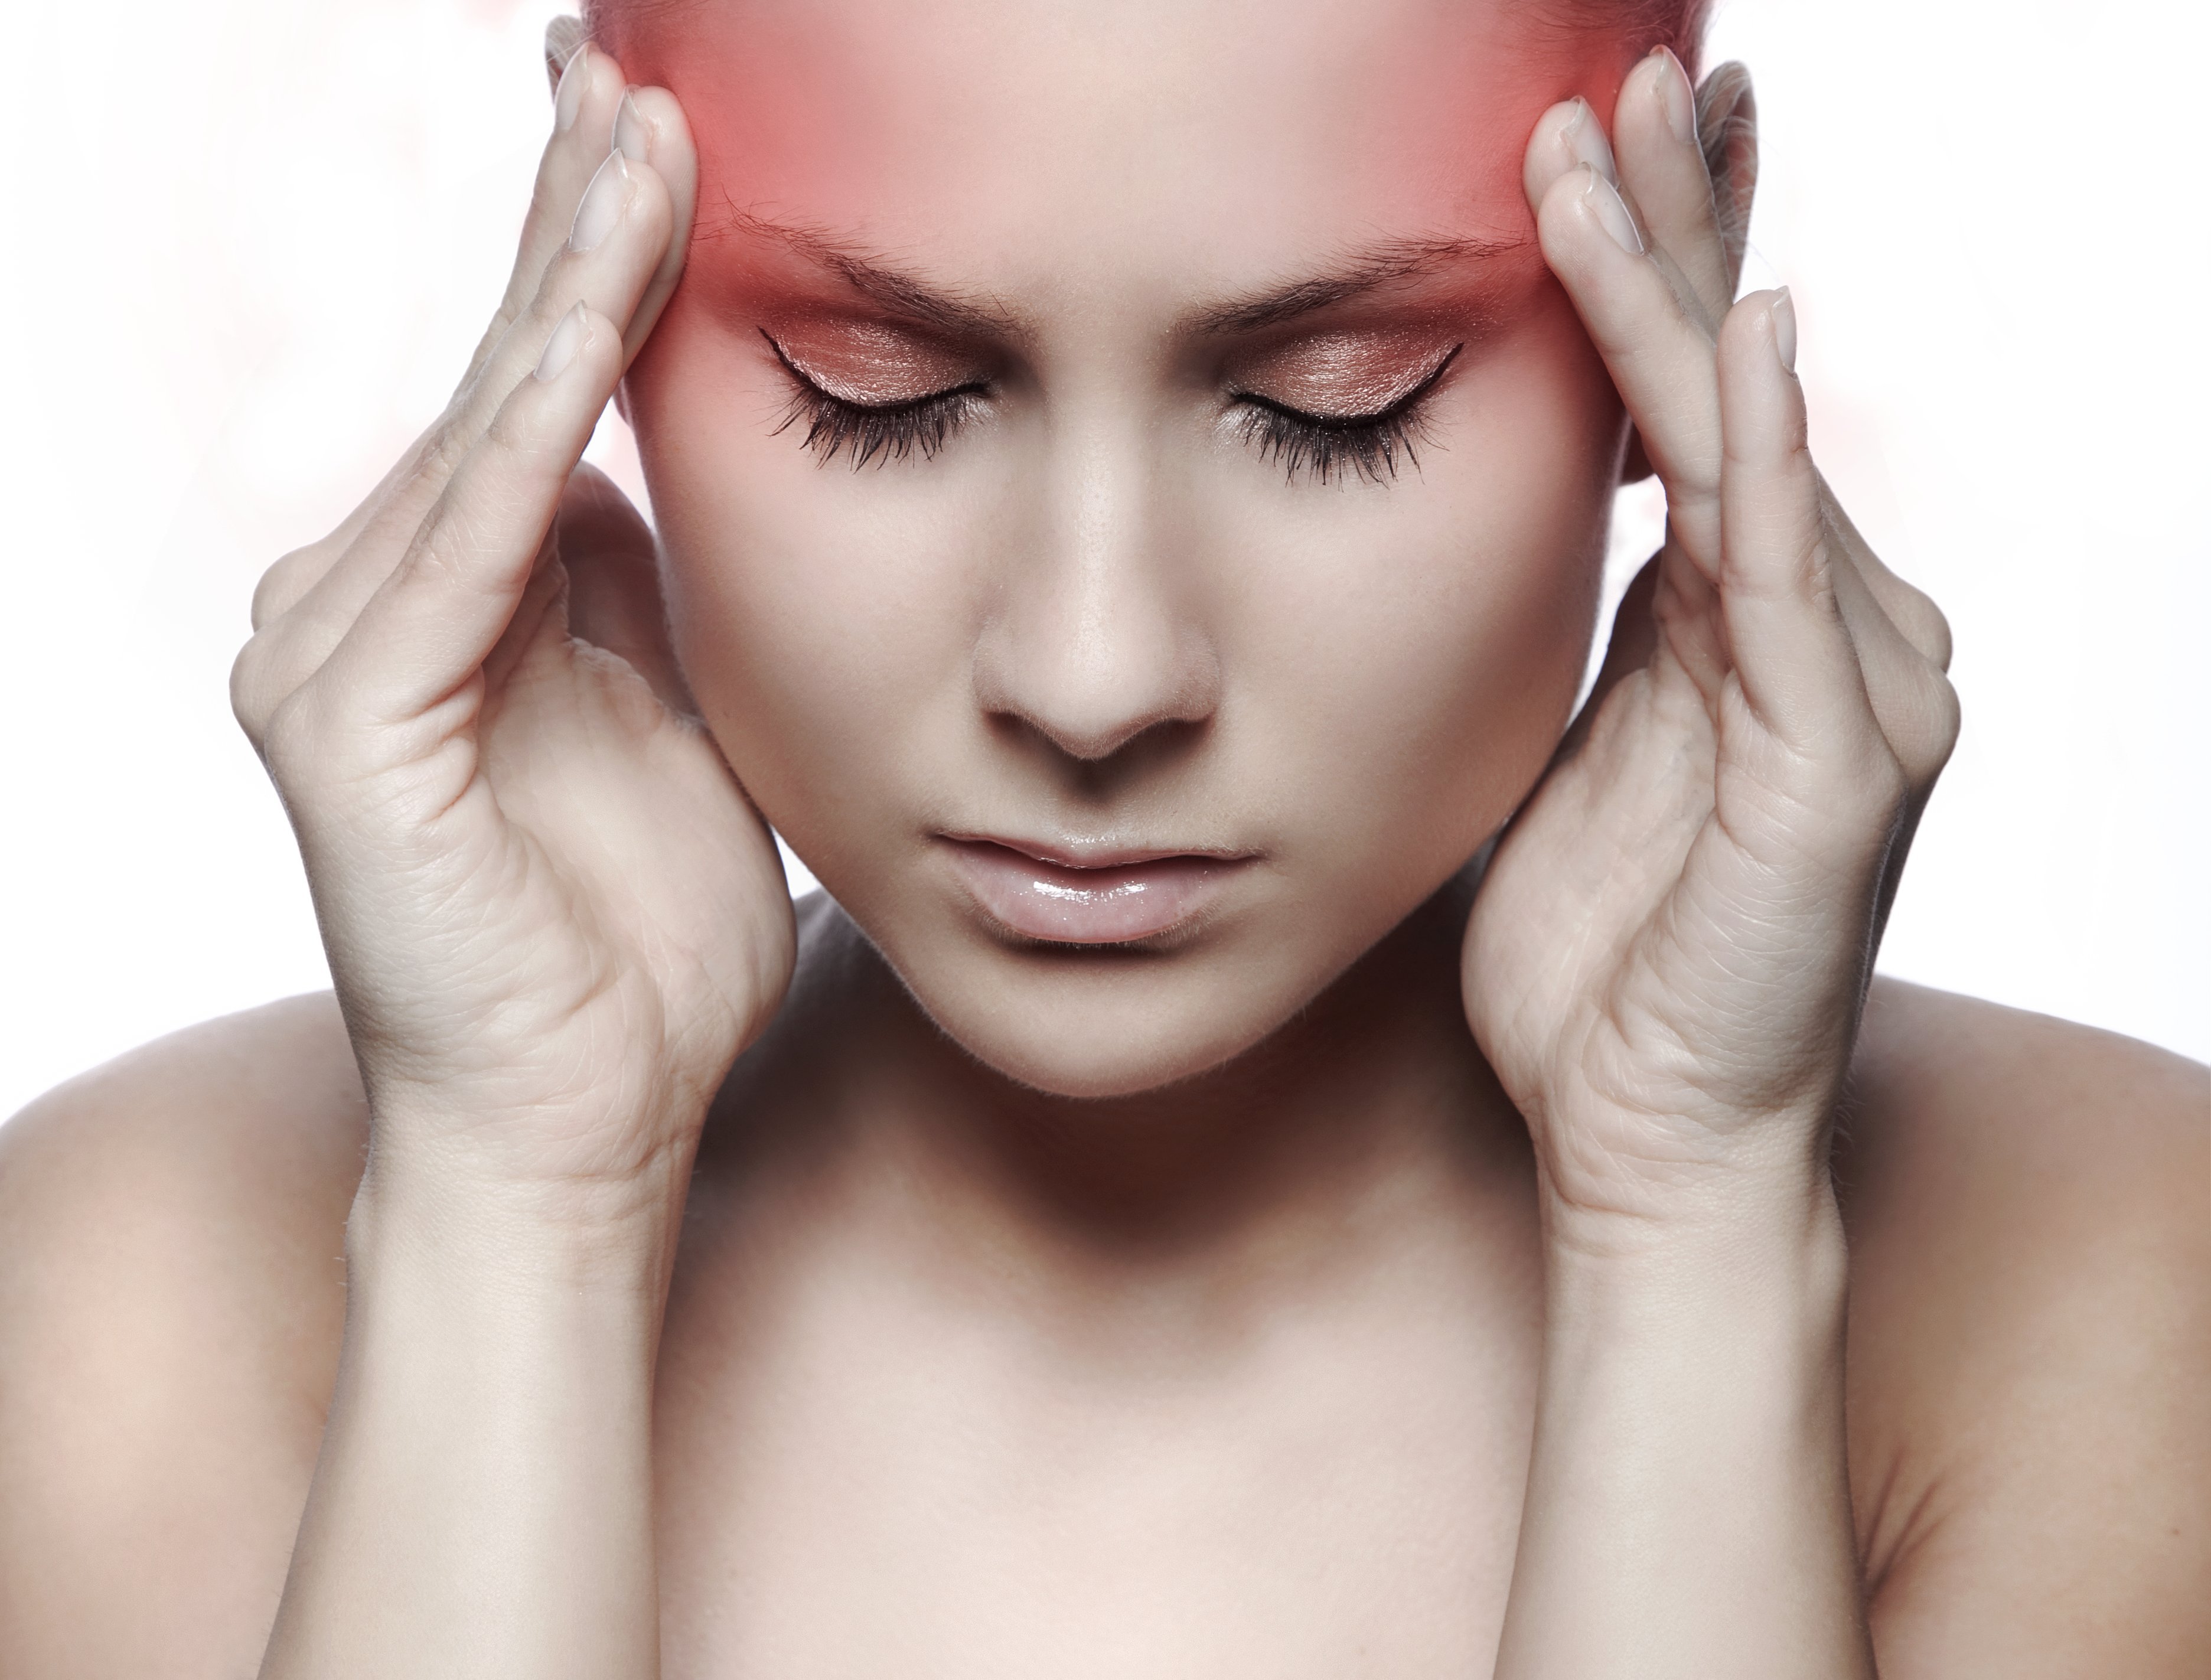 Το άγχος βασική αιτία πονοκεφάλου - Πιο ευάλωτες οι γυναίκες